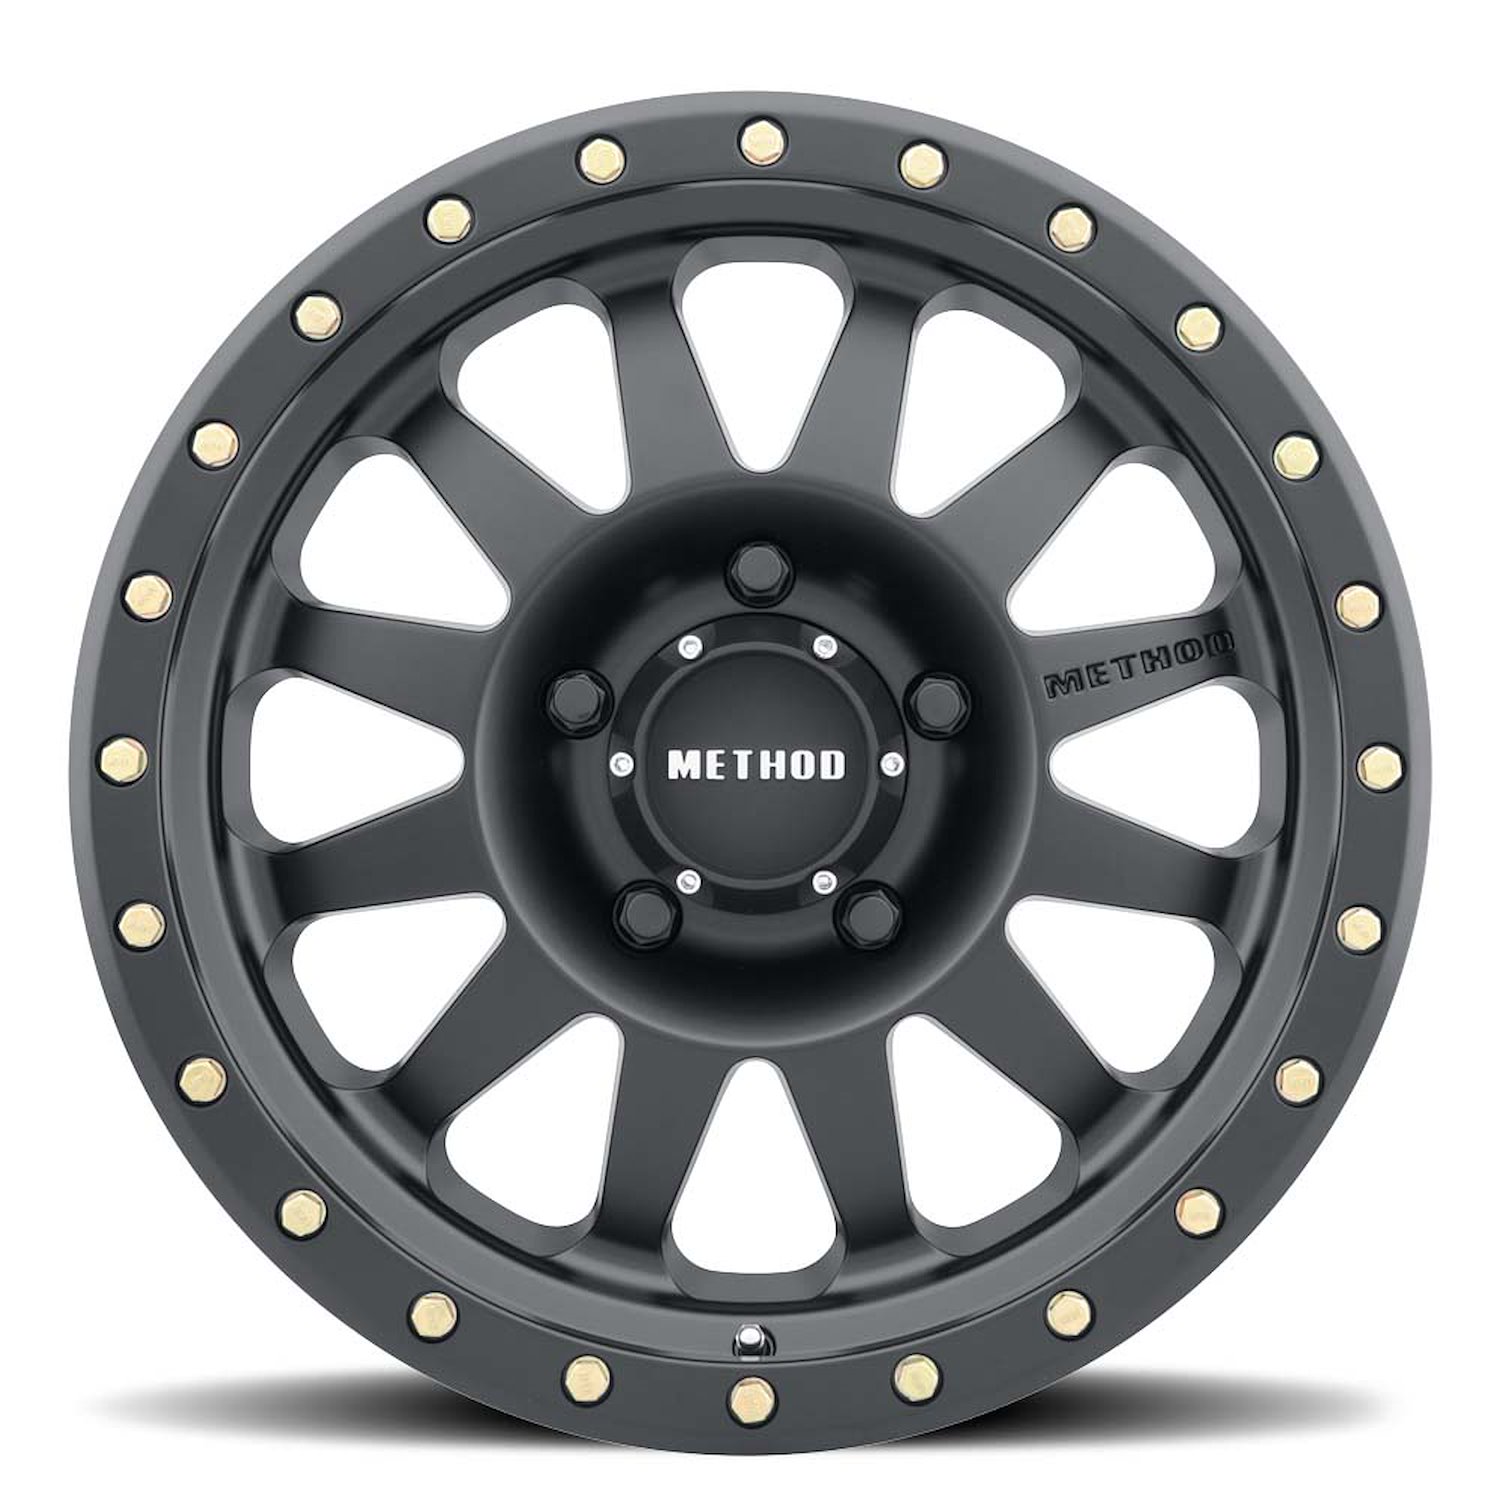 MR30489058525 STREET MR304 Double Standard Wheel [Size: 18" x 9"] Matte Black